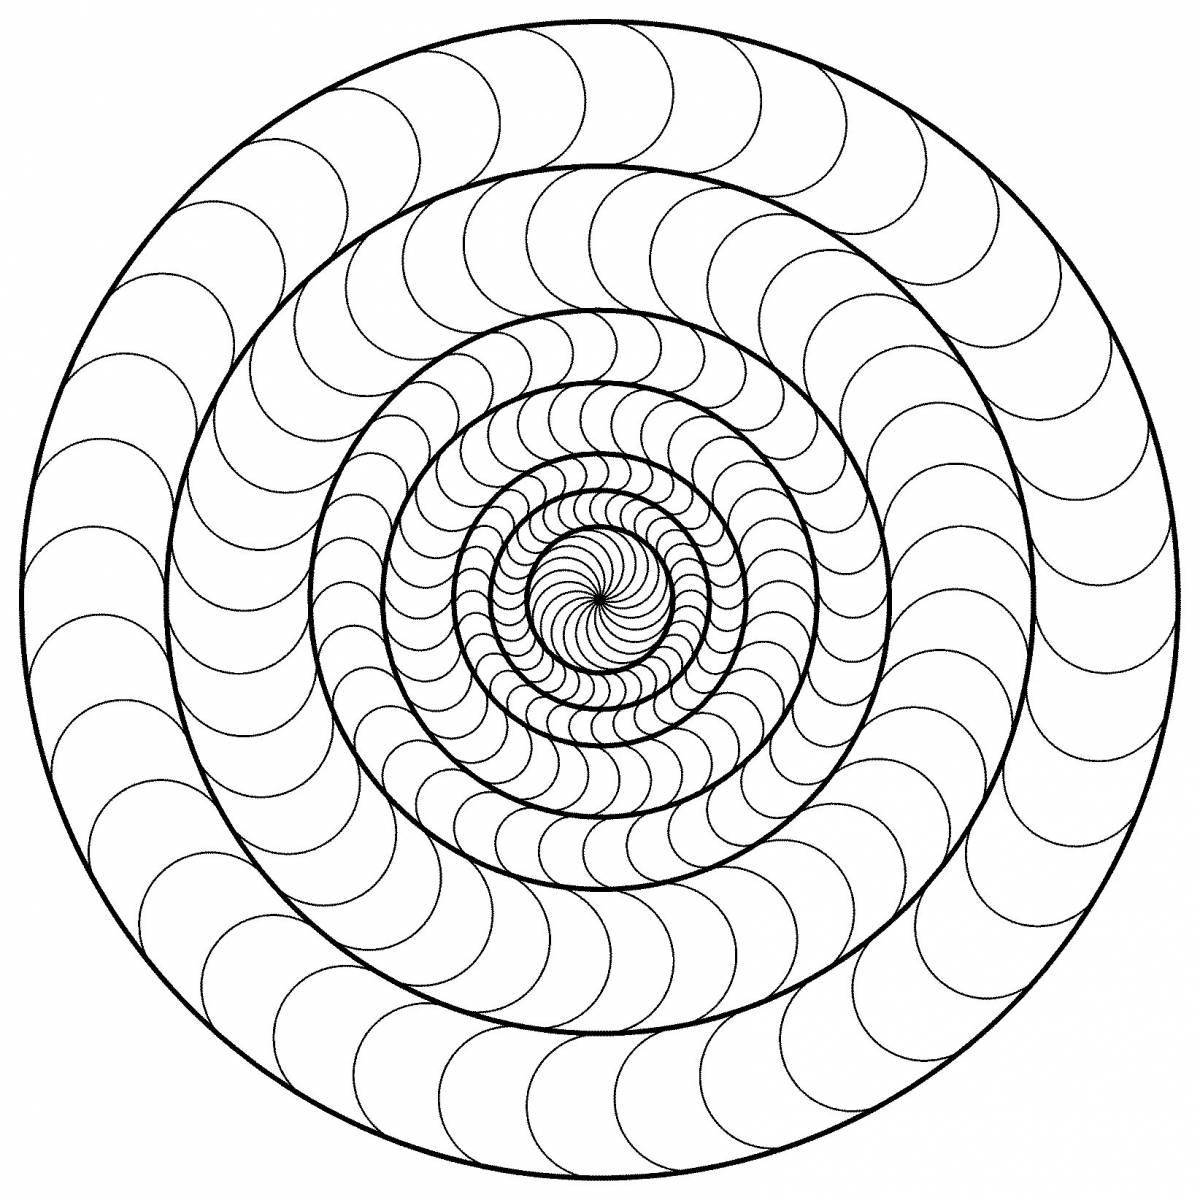 Magic circle spiral coloring page